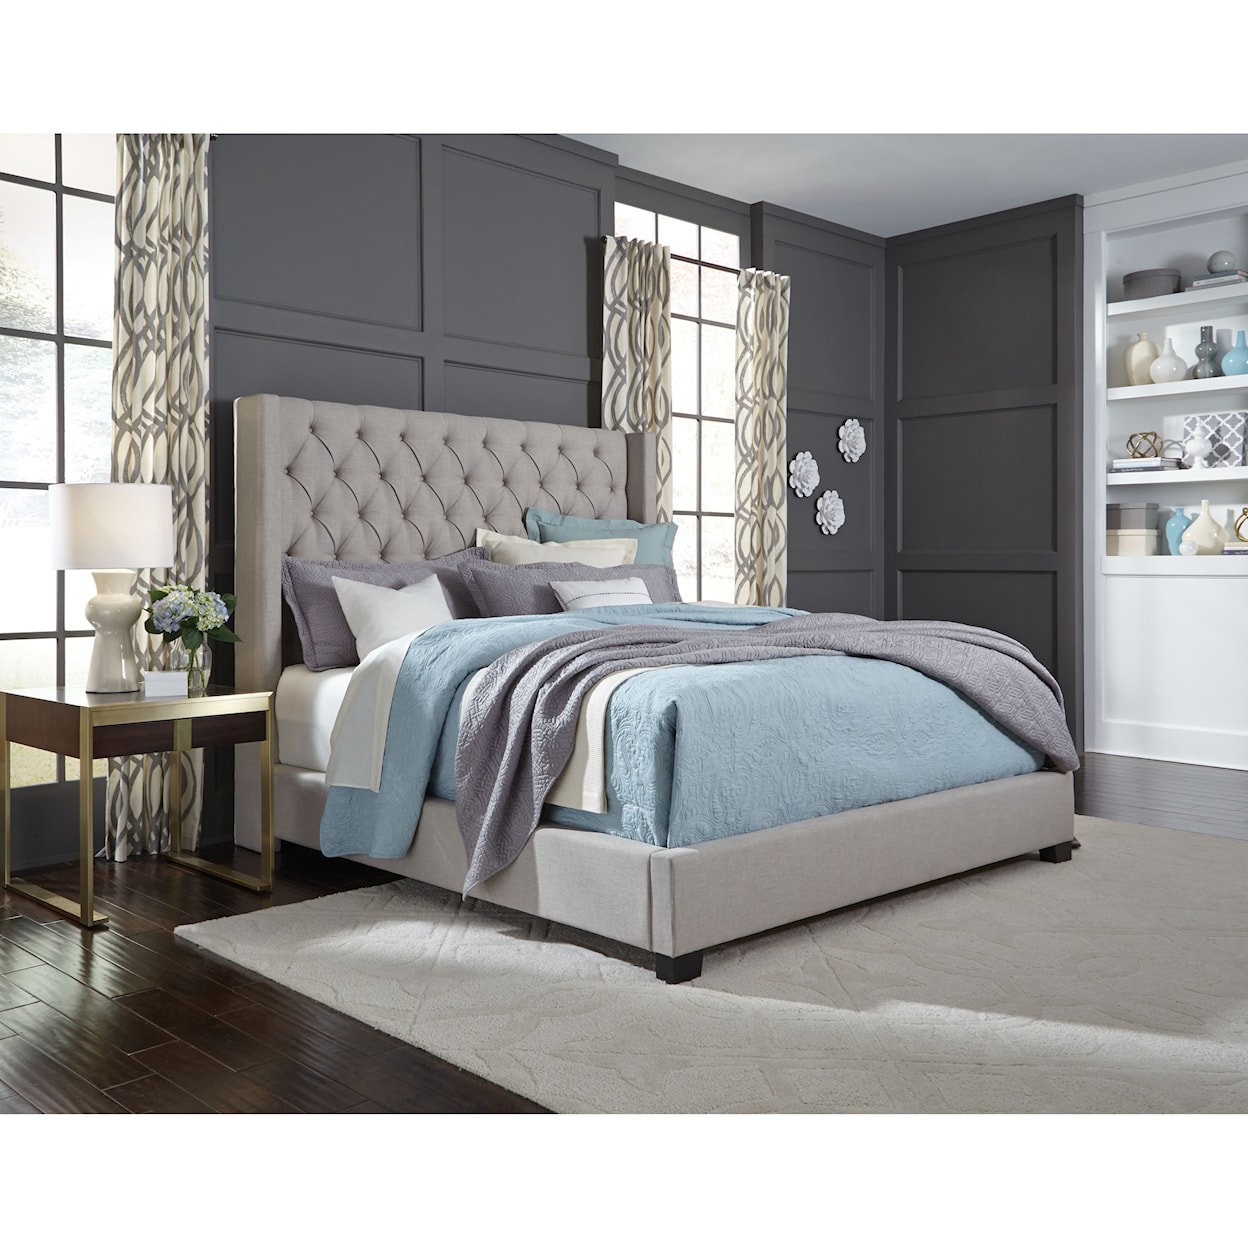 Standard Furniture Katy King Upholstered Bed